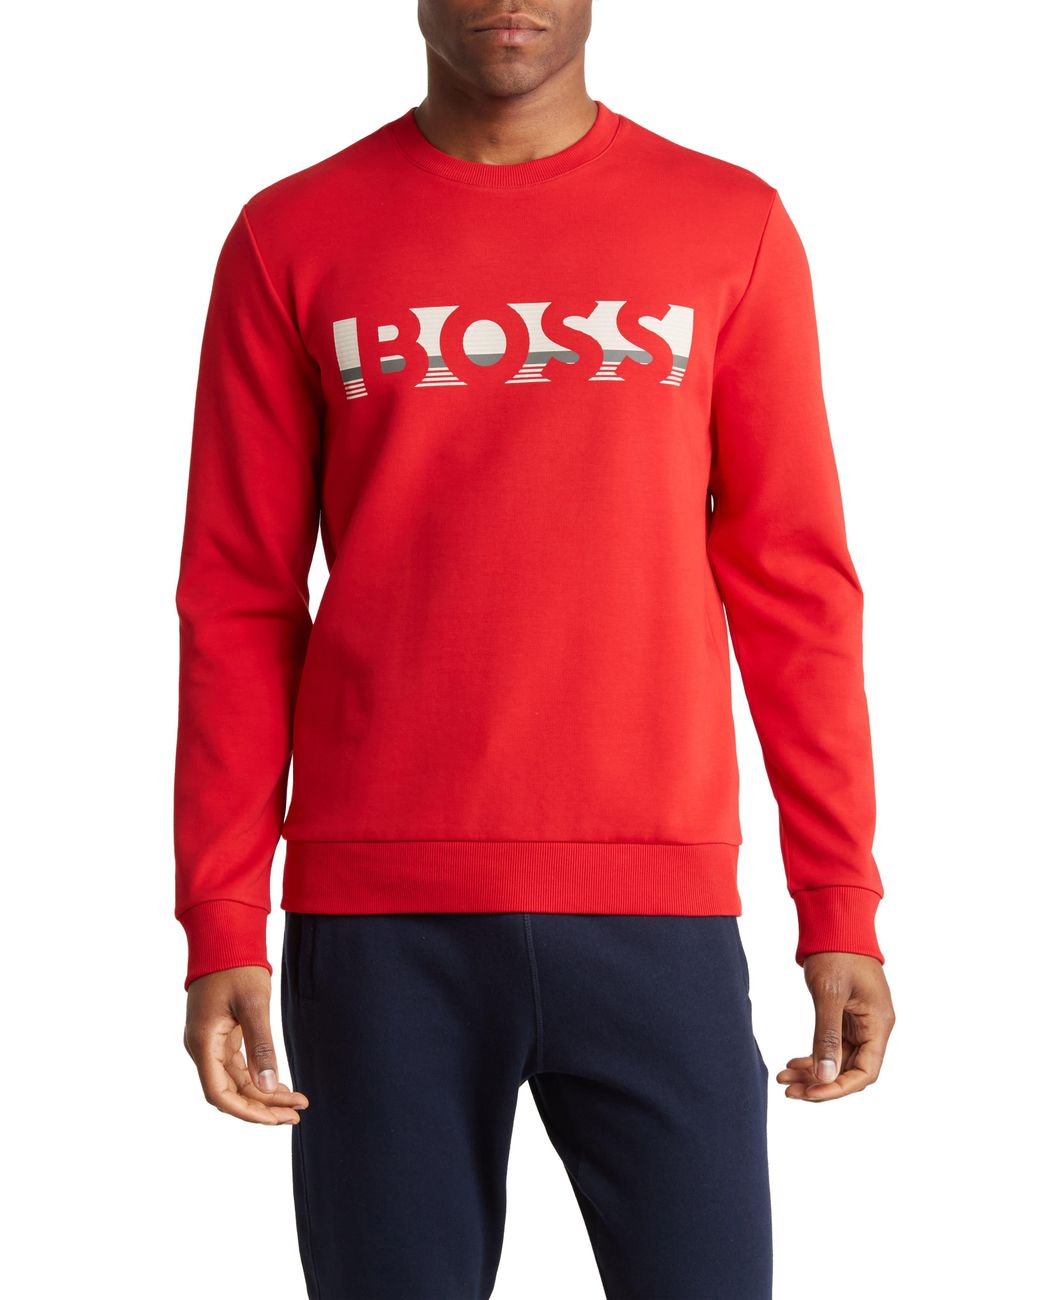 BOSS by HUGO BOSS Salbo Sweatshirt in Red for Men | Lyst